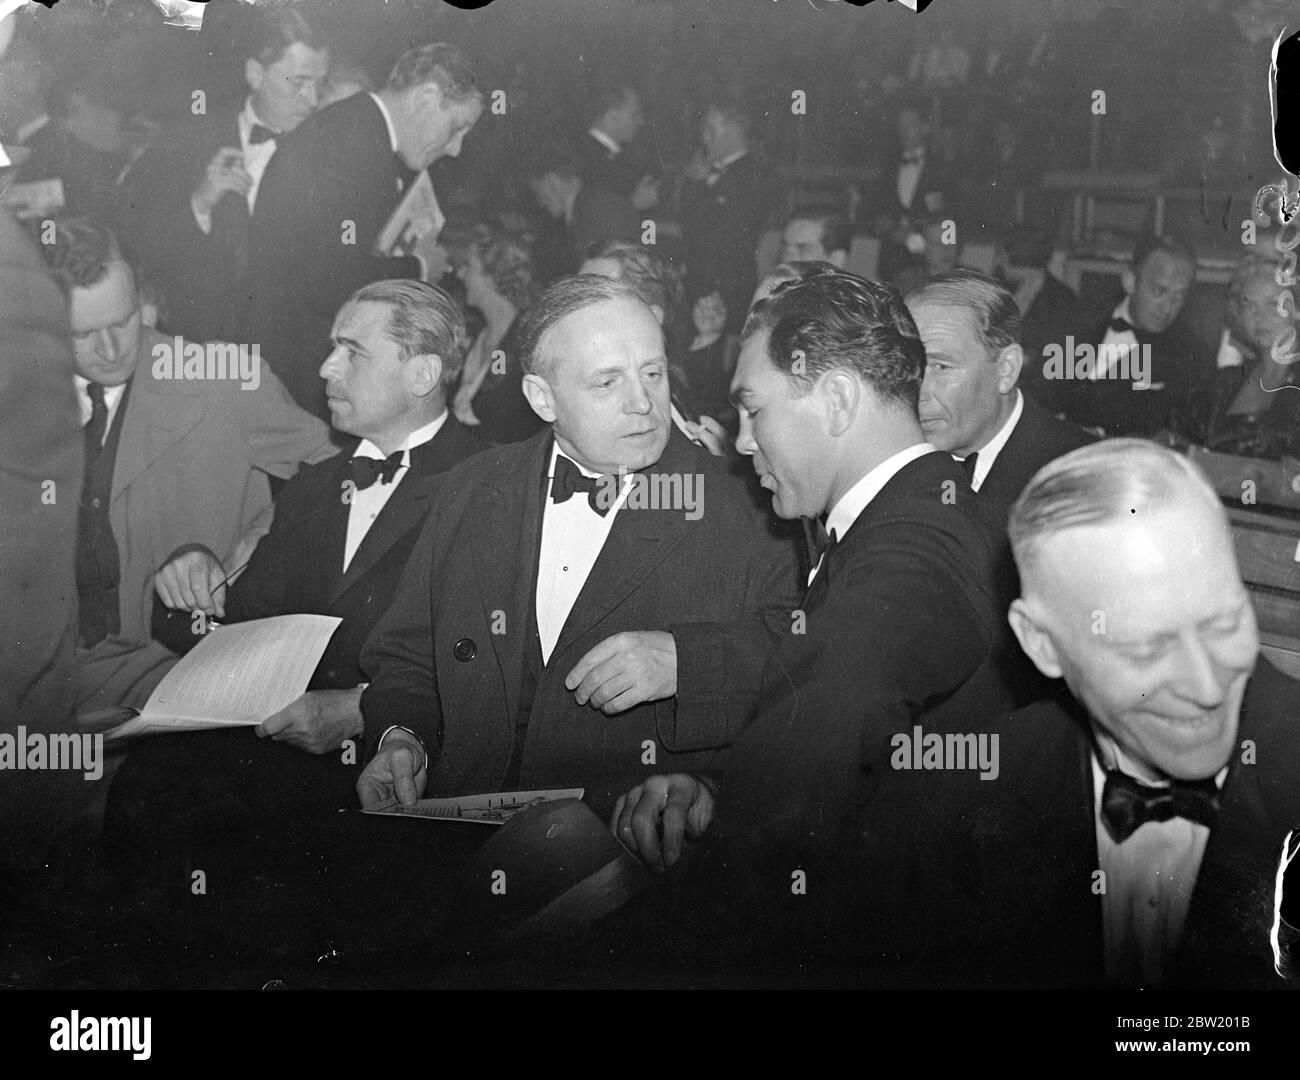 Max Schmeling e l'ambasciatore tedesco von Ribbentrop vedono la vittoria di Farr su Neusel. Max Schmeling, il tedesco pesi massimi con cui è possibile che il Welshman si abboni, ha guardato Tommy Farr, scovando il suo connazionale, Walter Neusel, nel terzo round della partita alla Harringay Arena di Londra. Spettacoli fotografici: Max Schmeling parla con l'ambasciatore tedesco, Herr Joachim von Ribbentrop, alla circonvallazione 15 giugno 1937 Foto Stock